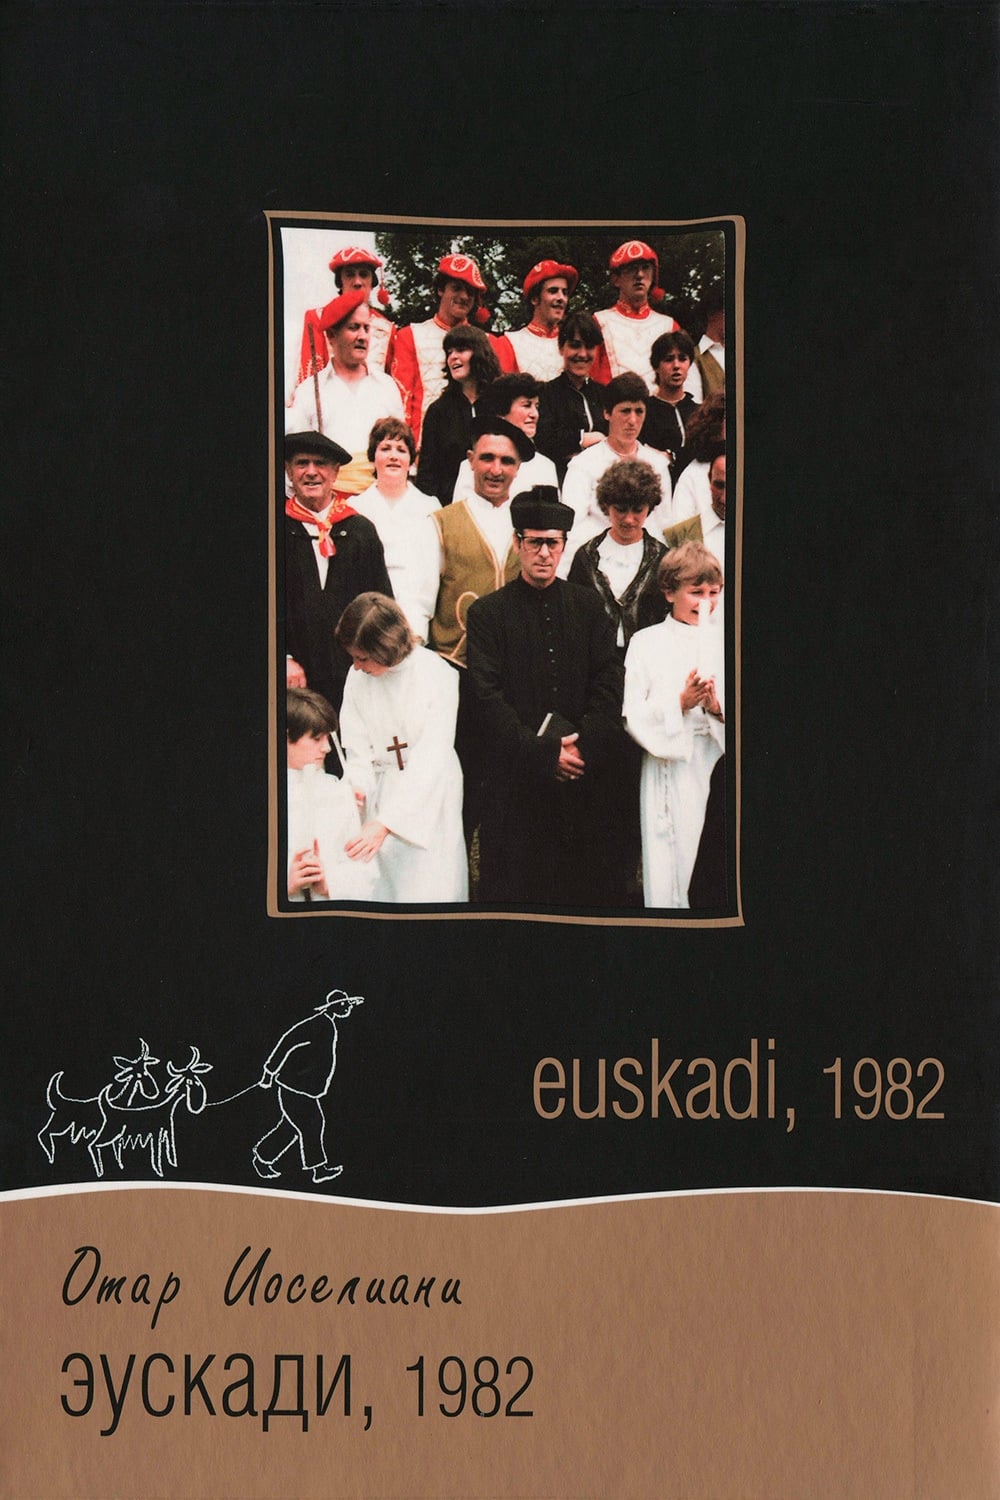 Euskadi, Summer 1982 (1983)